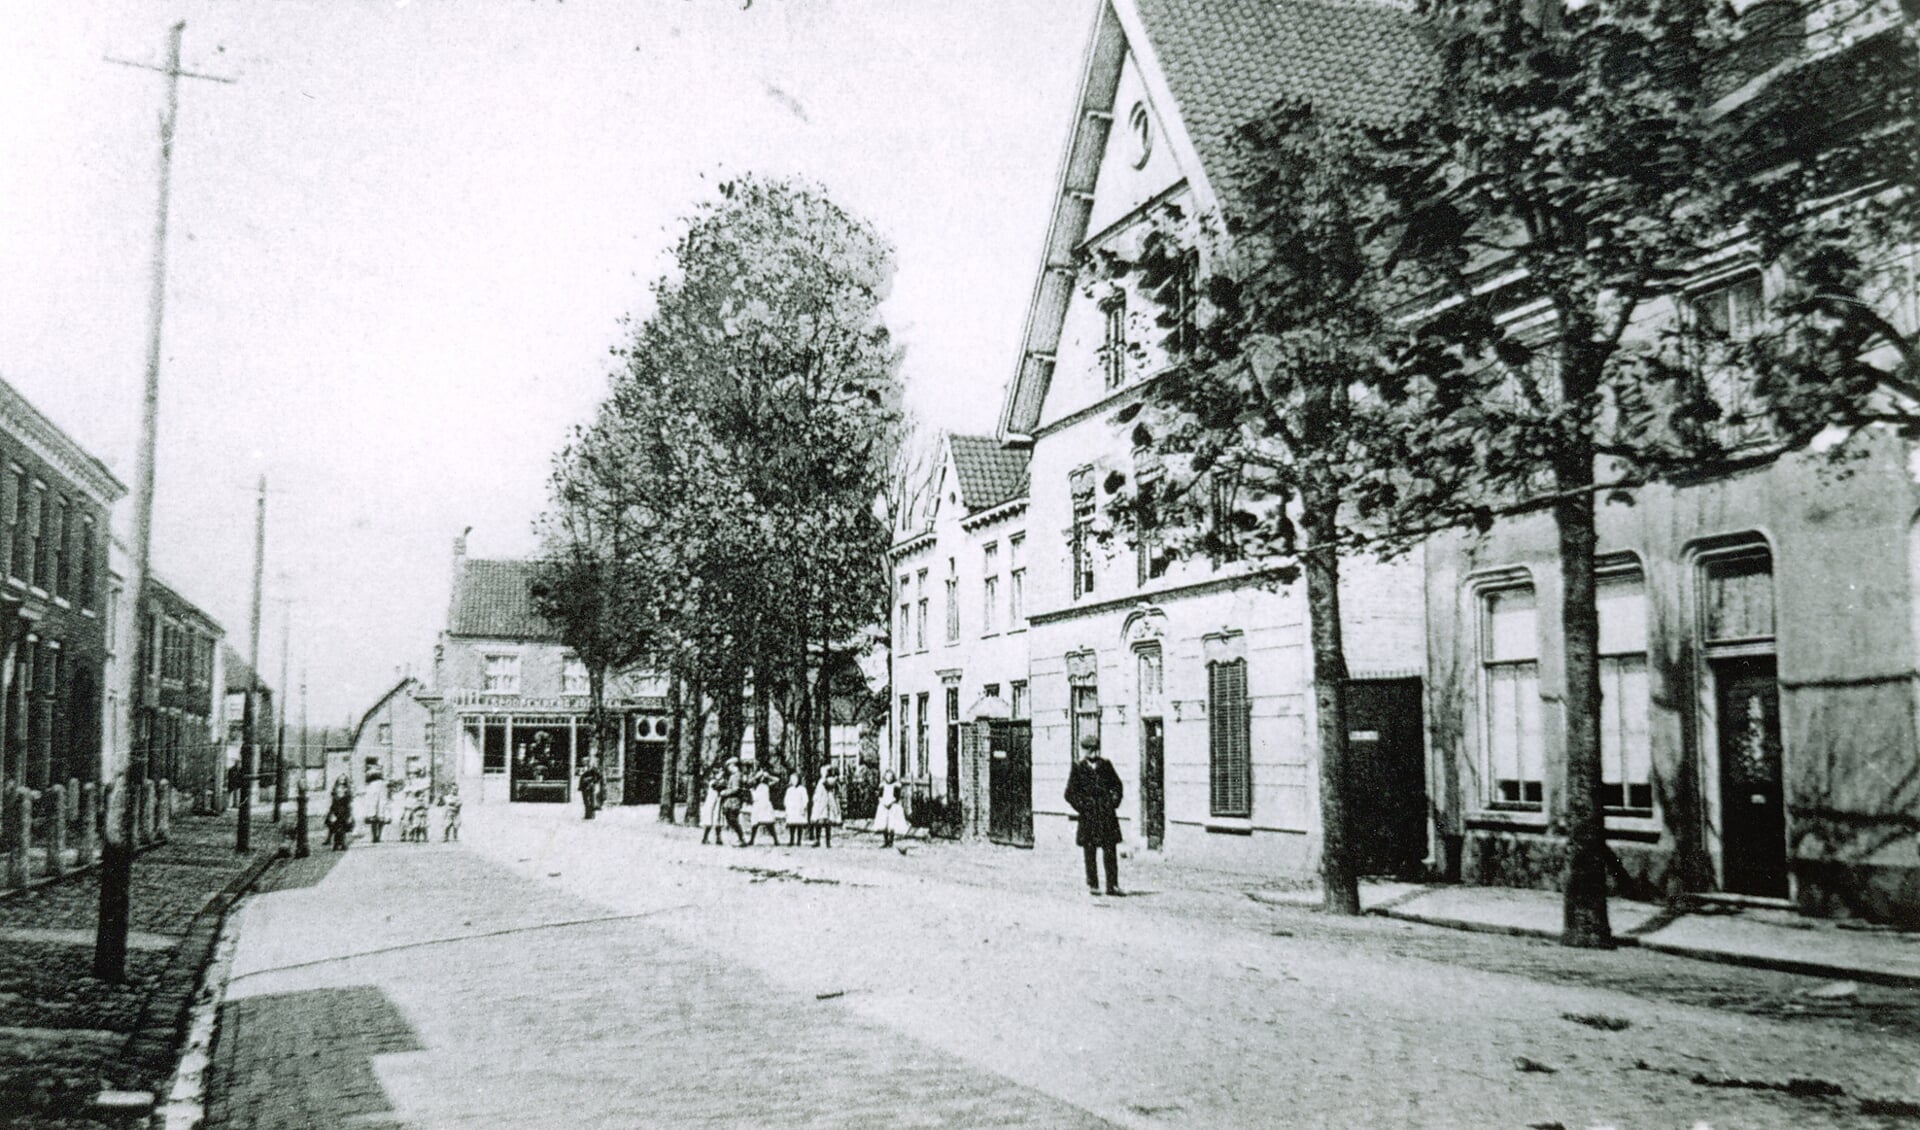 Restaurant De Gouden Leeuw stond vroeger in de Grotestraat in Cuijk. (foto: Foto Archiefdienst Cuijk)